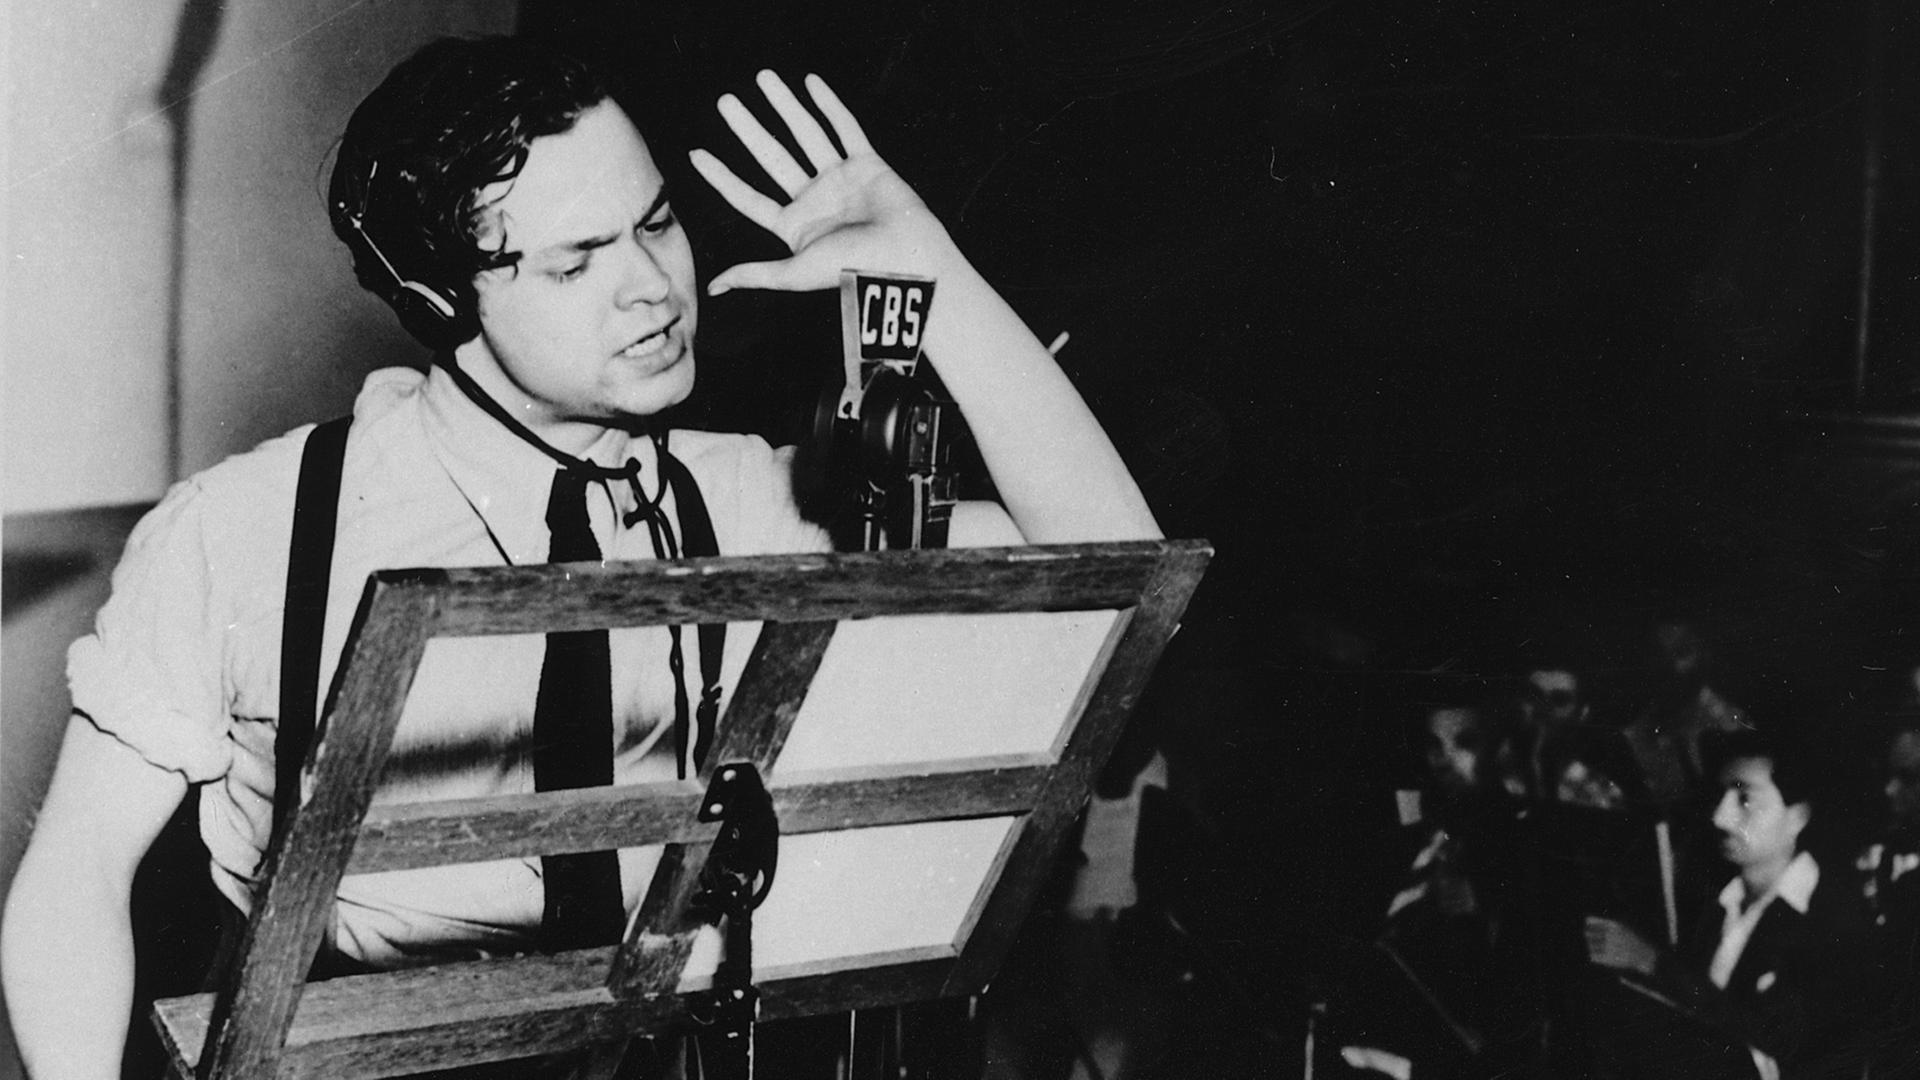 Orson Welles bei der Aufnahme zum Hörspiel "War of the Worlds" am 30.10.1938 in New York